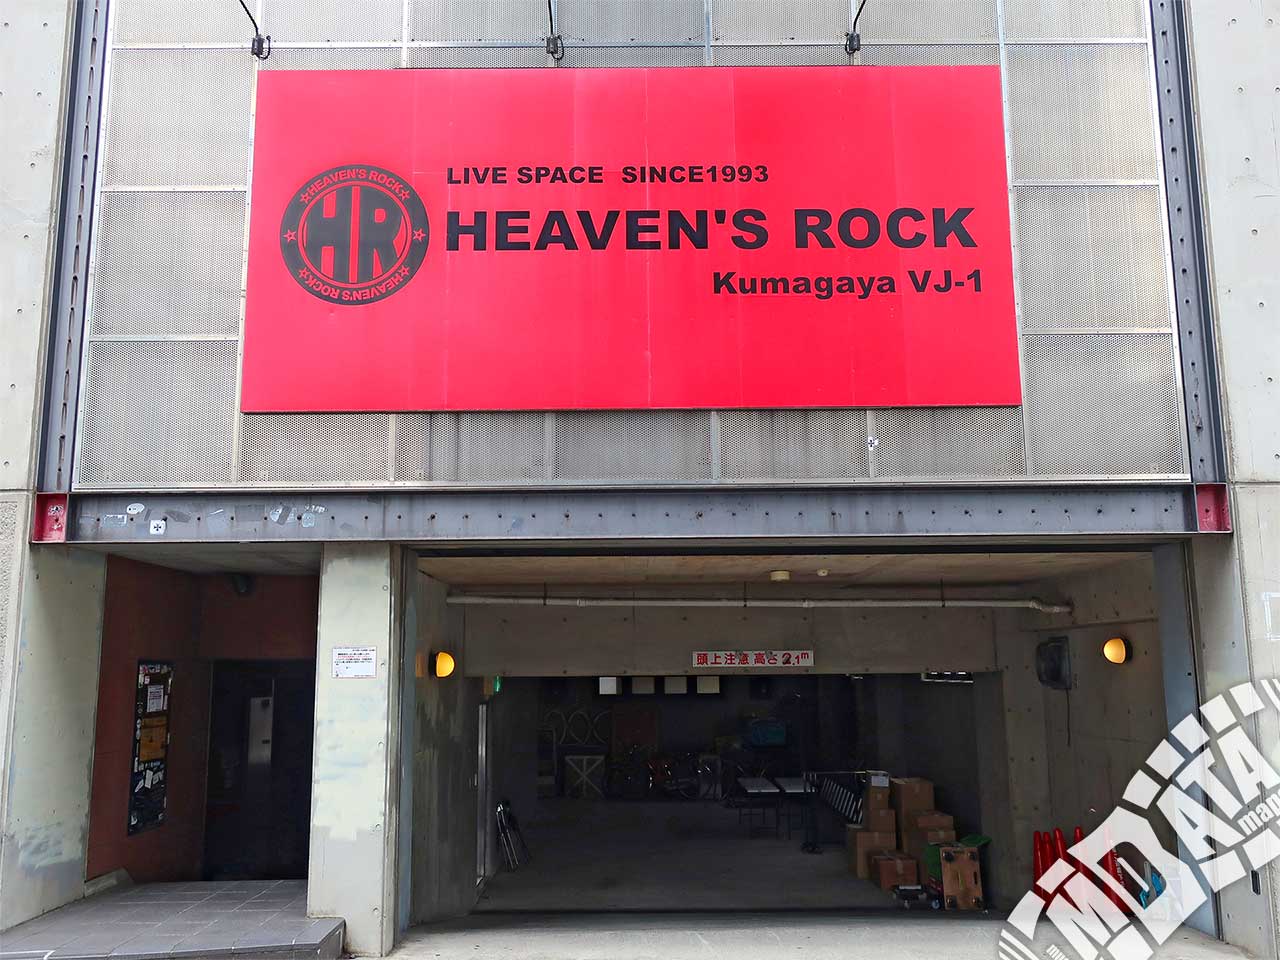 スタジオHEAVEN'S ROCK熊谷店の写真 撮影日:2018/9/24 Photo taken on 2018/09/24